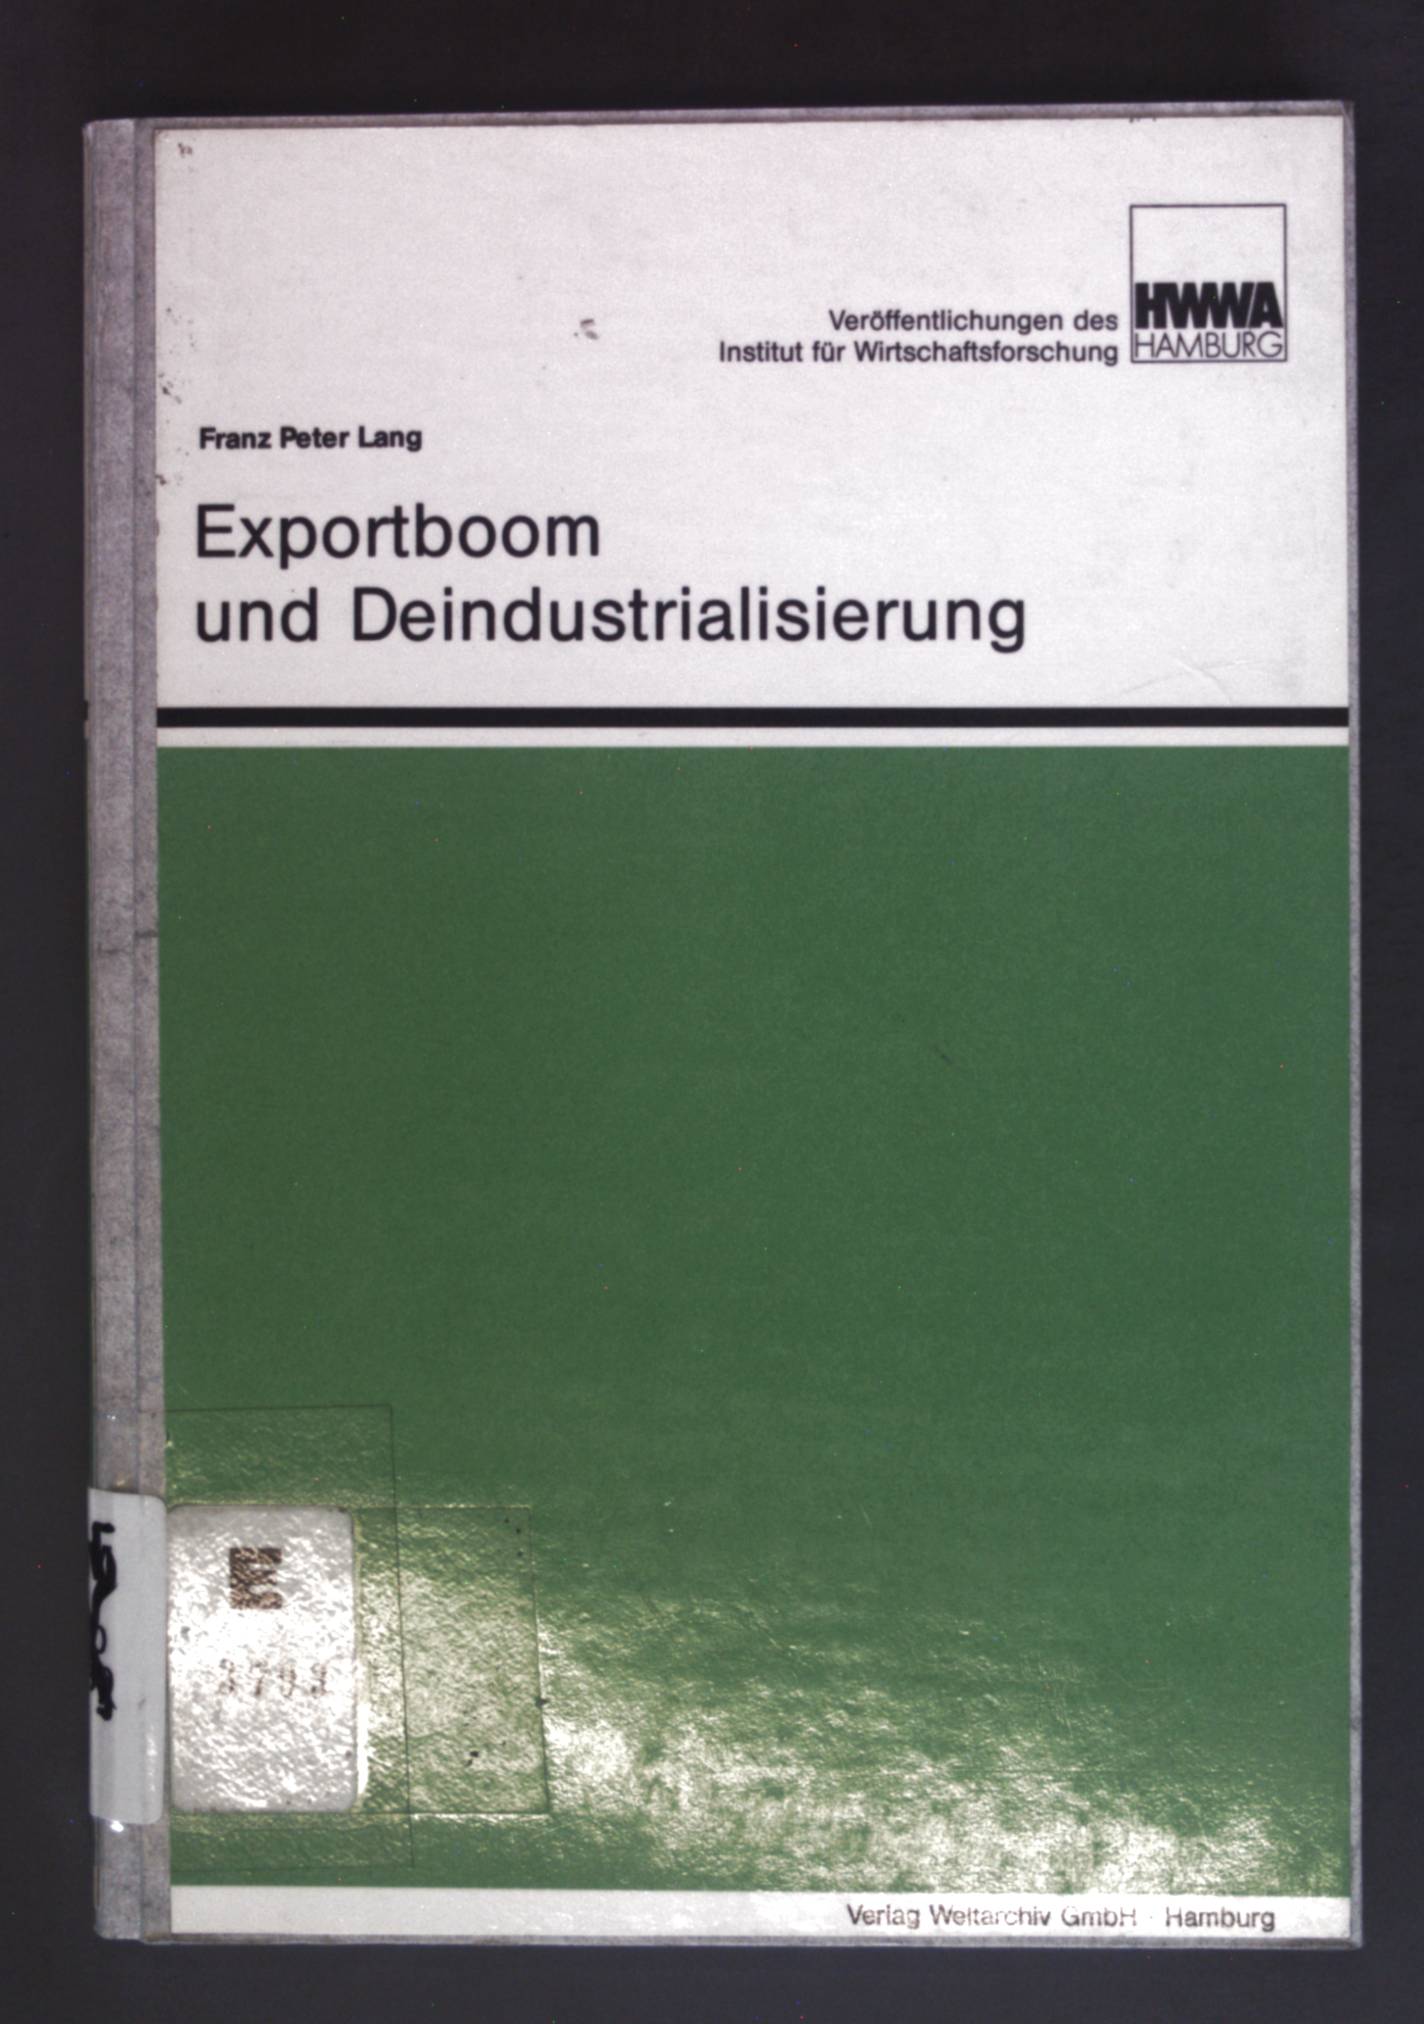 Exportboom und Deindustrialisierung: Realer Wechselkurs, internationale Einkommenstransfers und Allokation (Veroffentlichungen des HWWA-Institut fur Wirtschaftsforschung-Hamburg) (German Edition)